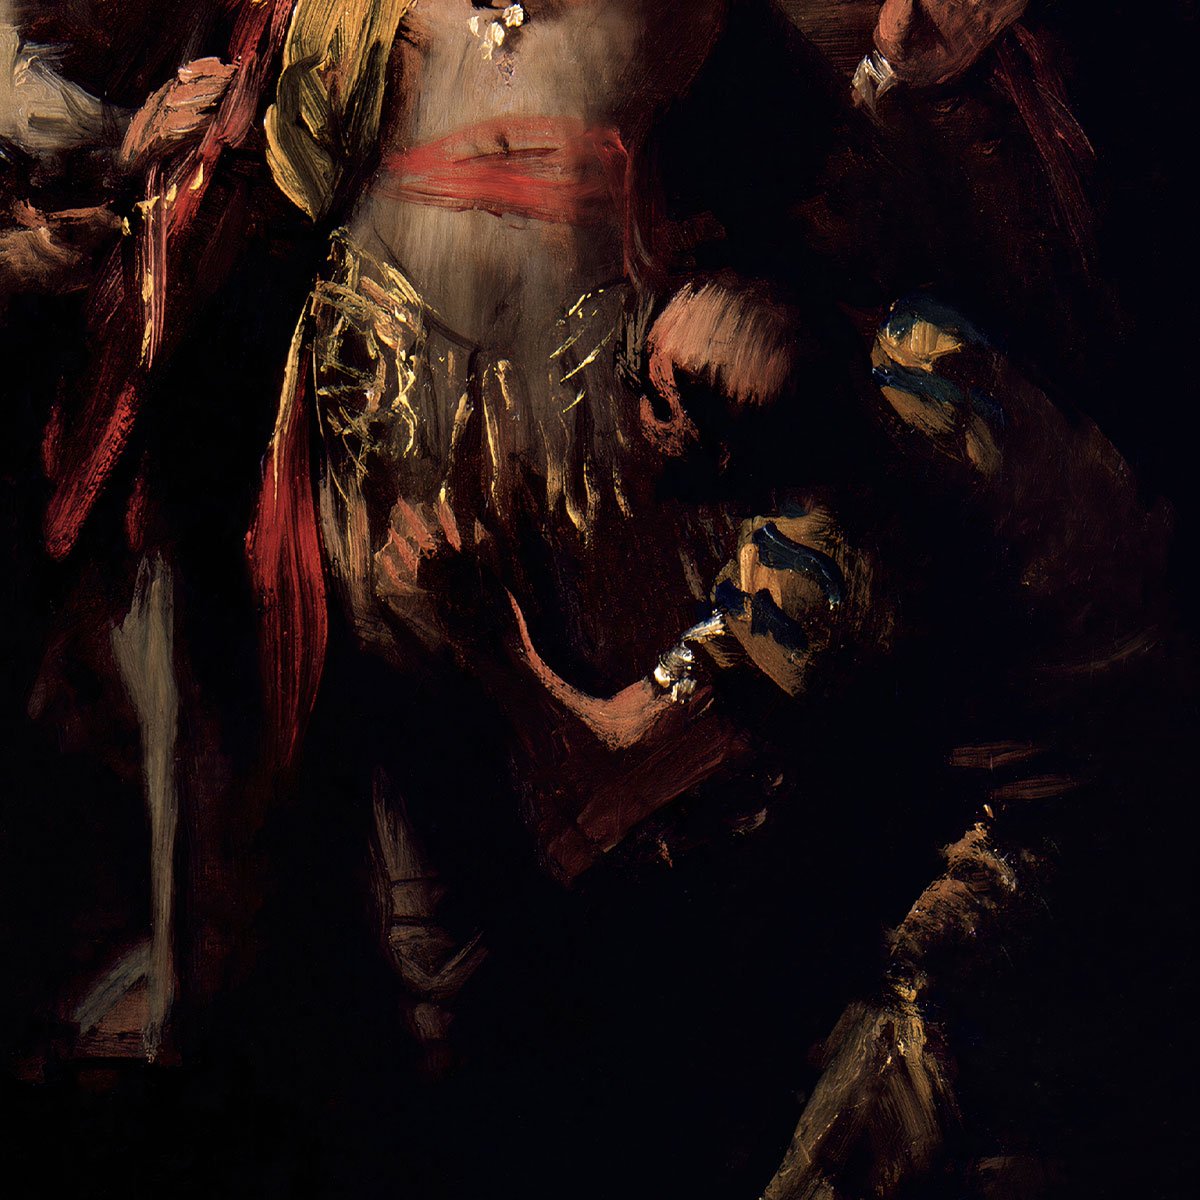 Saint Hermenegild in Prison by Francisco de Goya